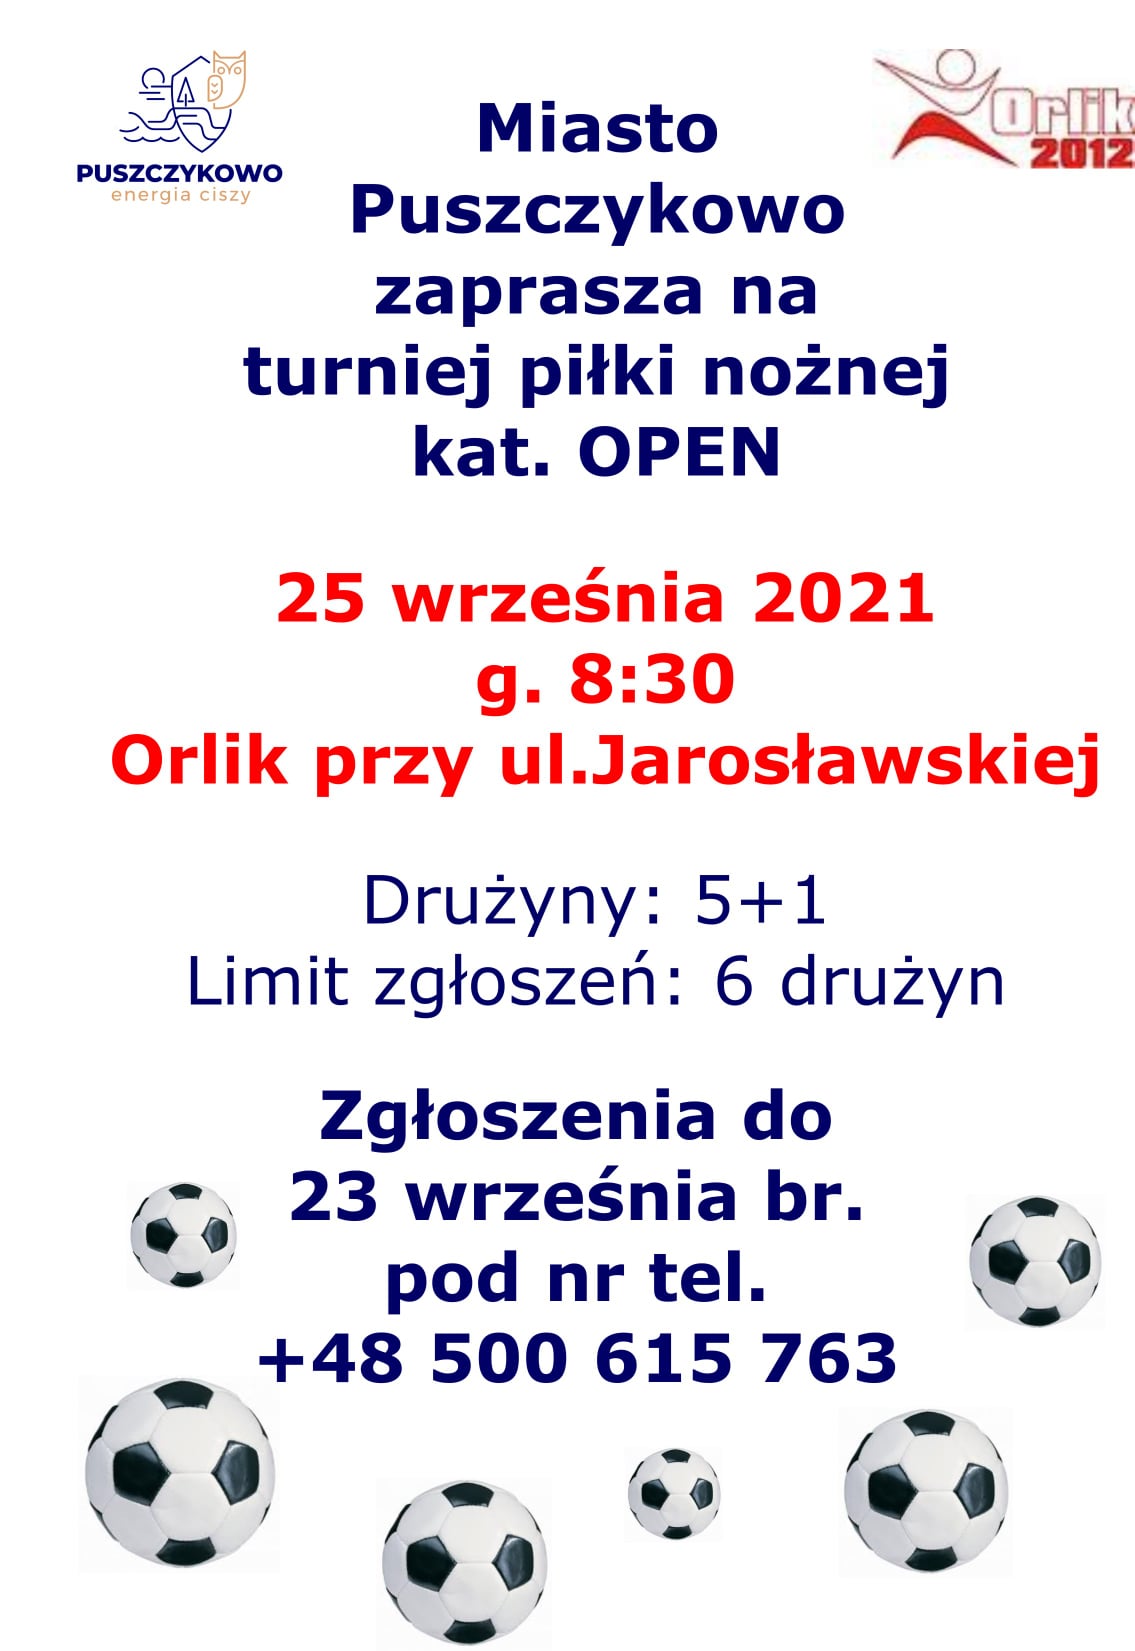 Zapraszamy na turniej piłki nożnej, który odbędzie się na Orliku przy ul. Jarosławskiej.